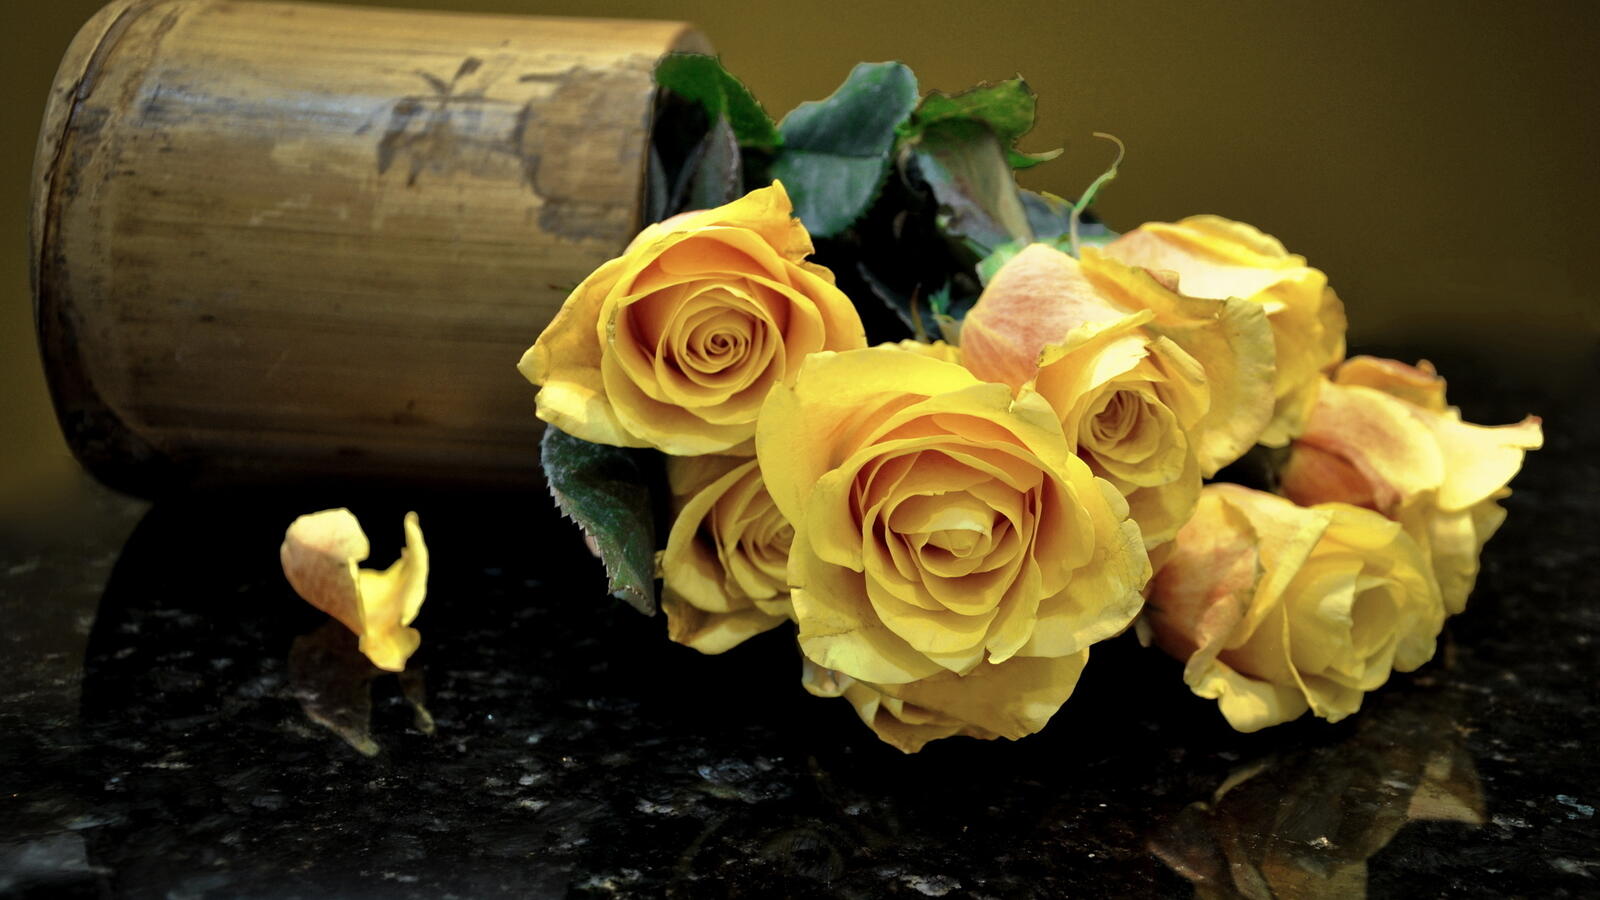 Обои желтые розы горшочек опрокинутый на рабочий стол